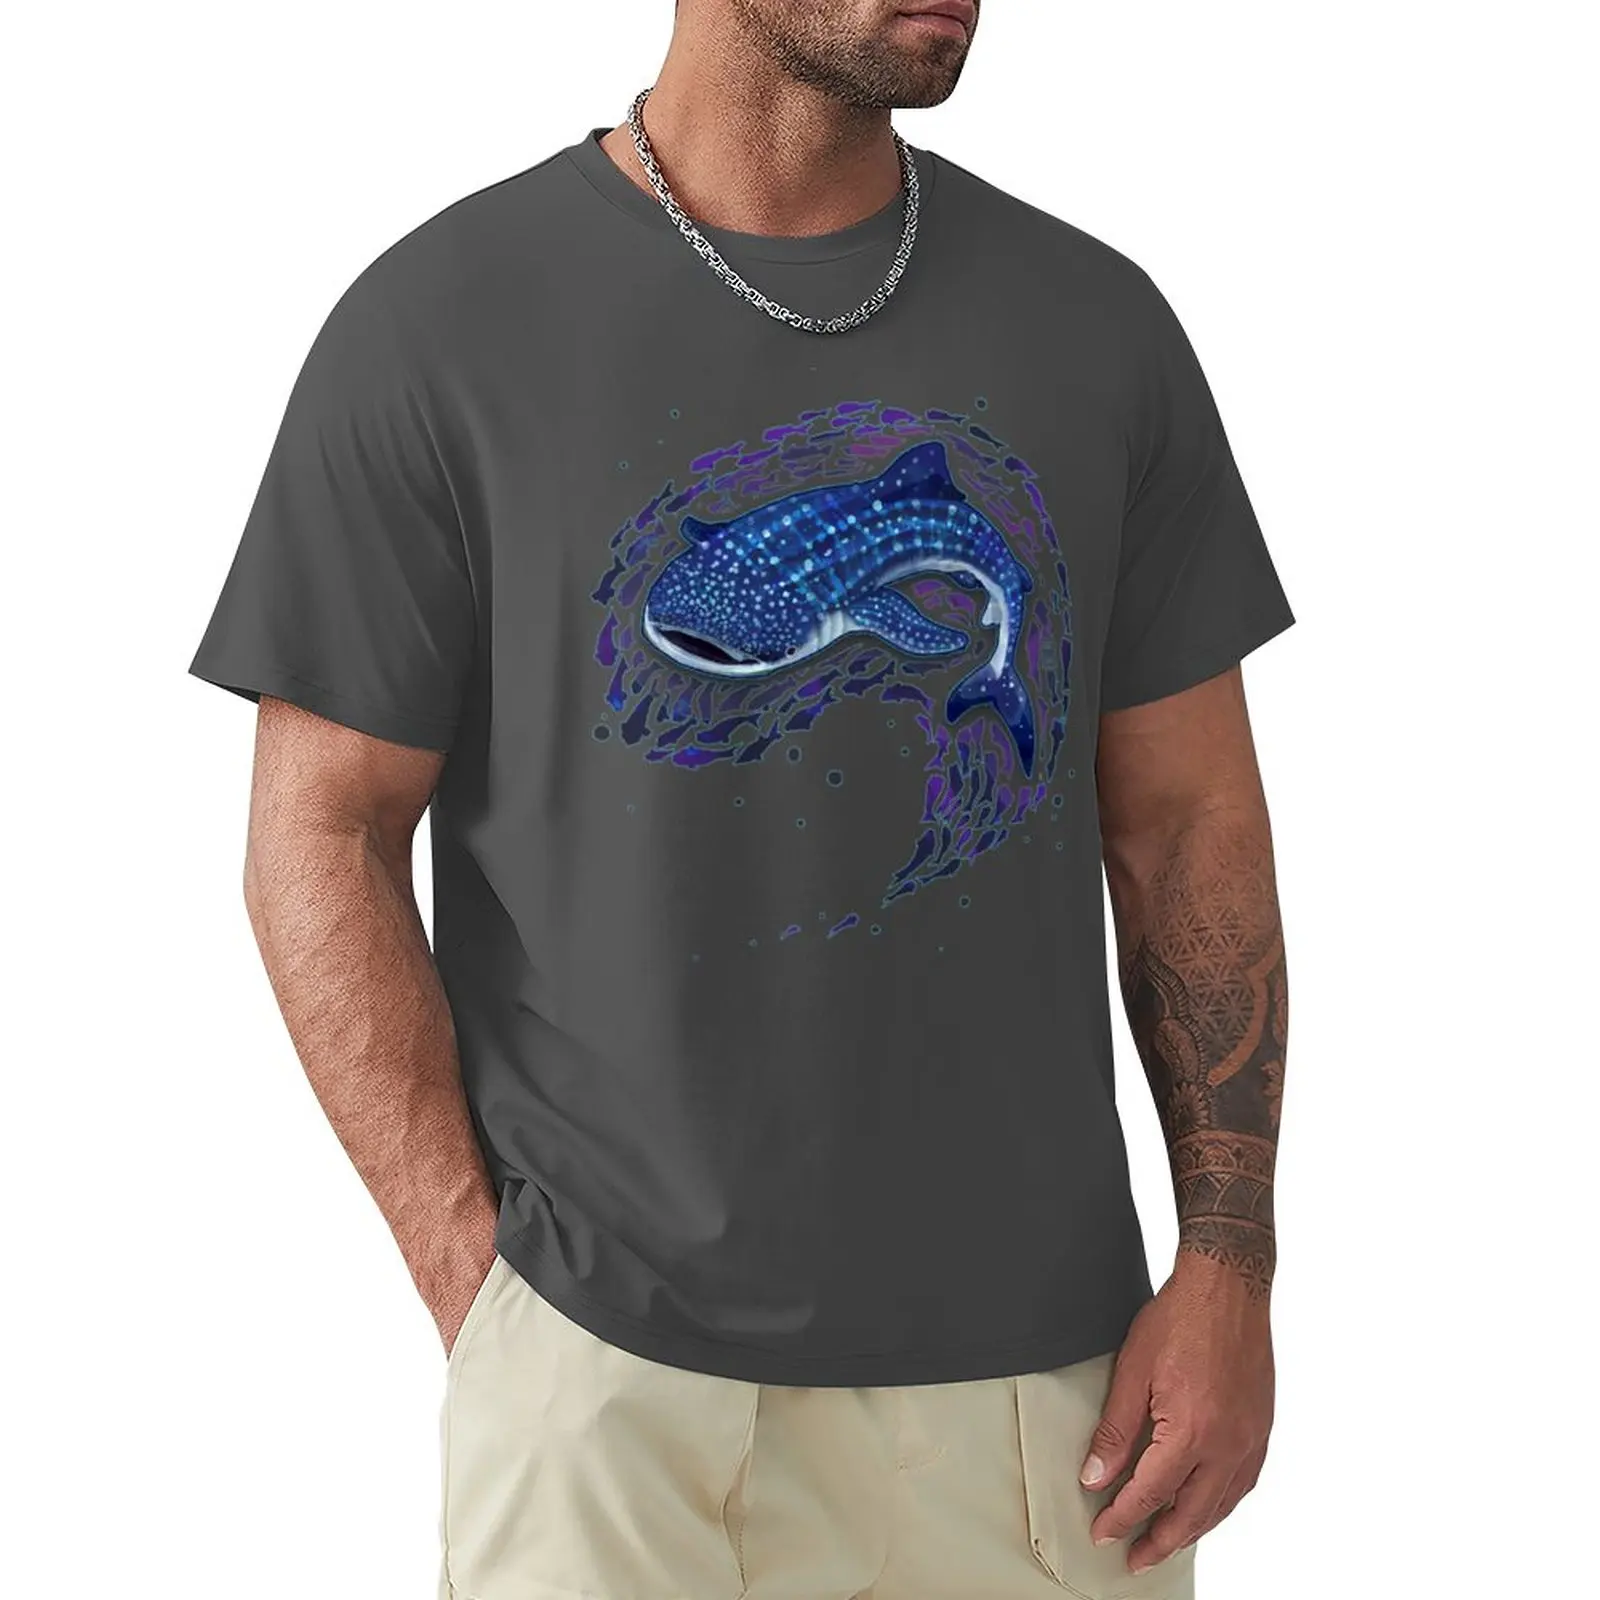 

Футболка с изображением Кита и акулы, короткая футболка, мужские футболки